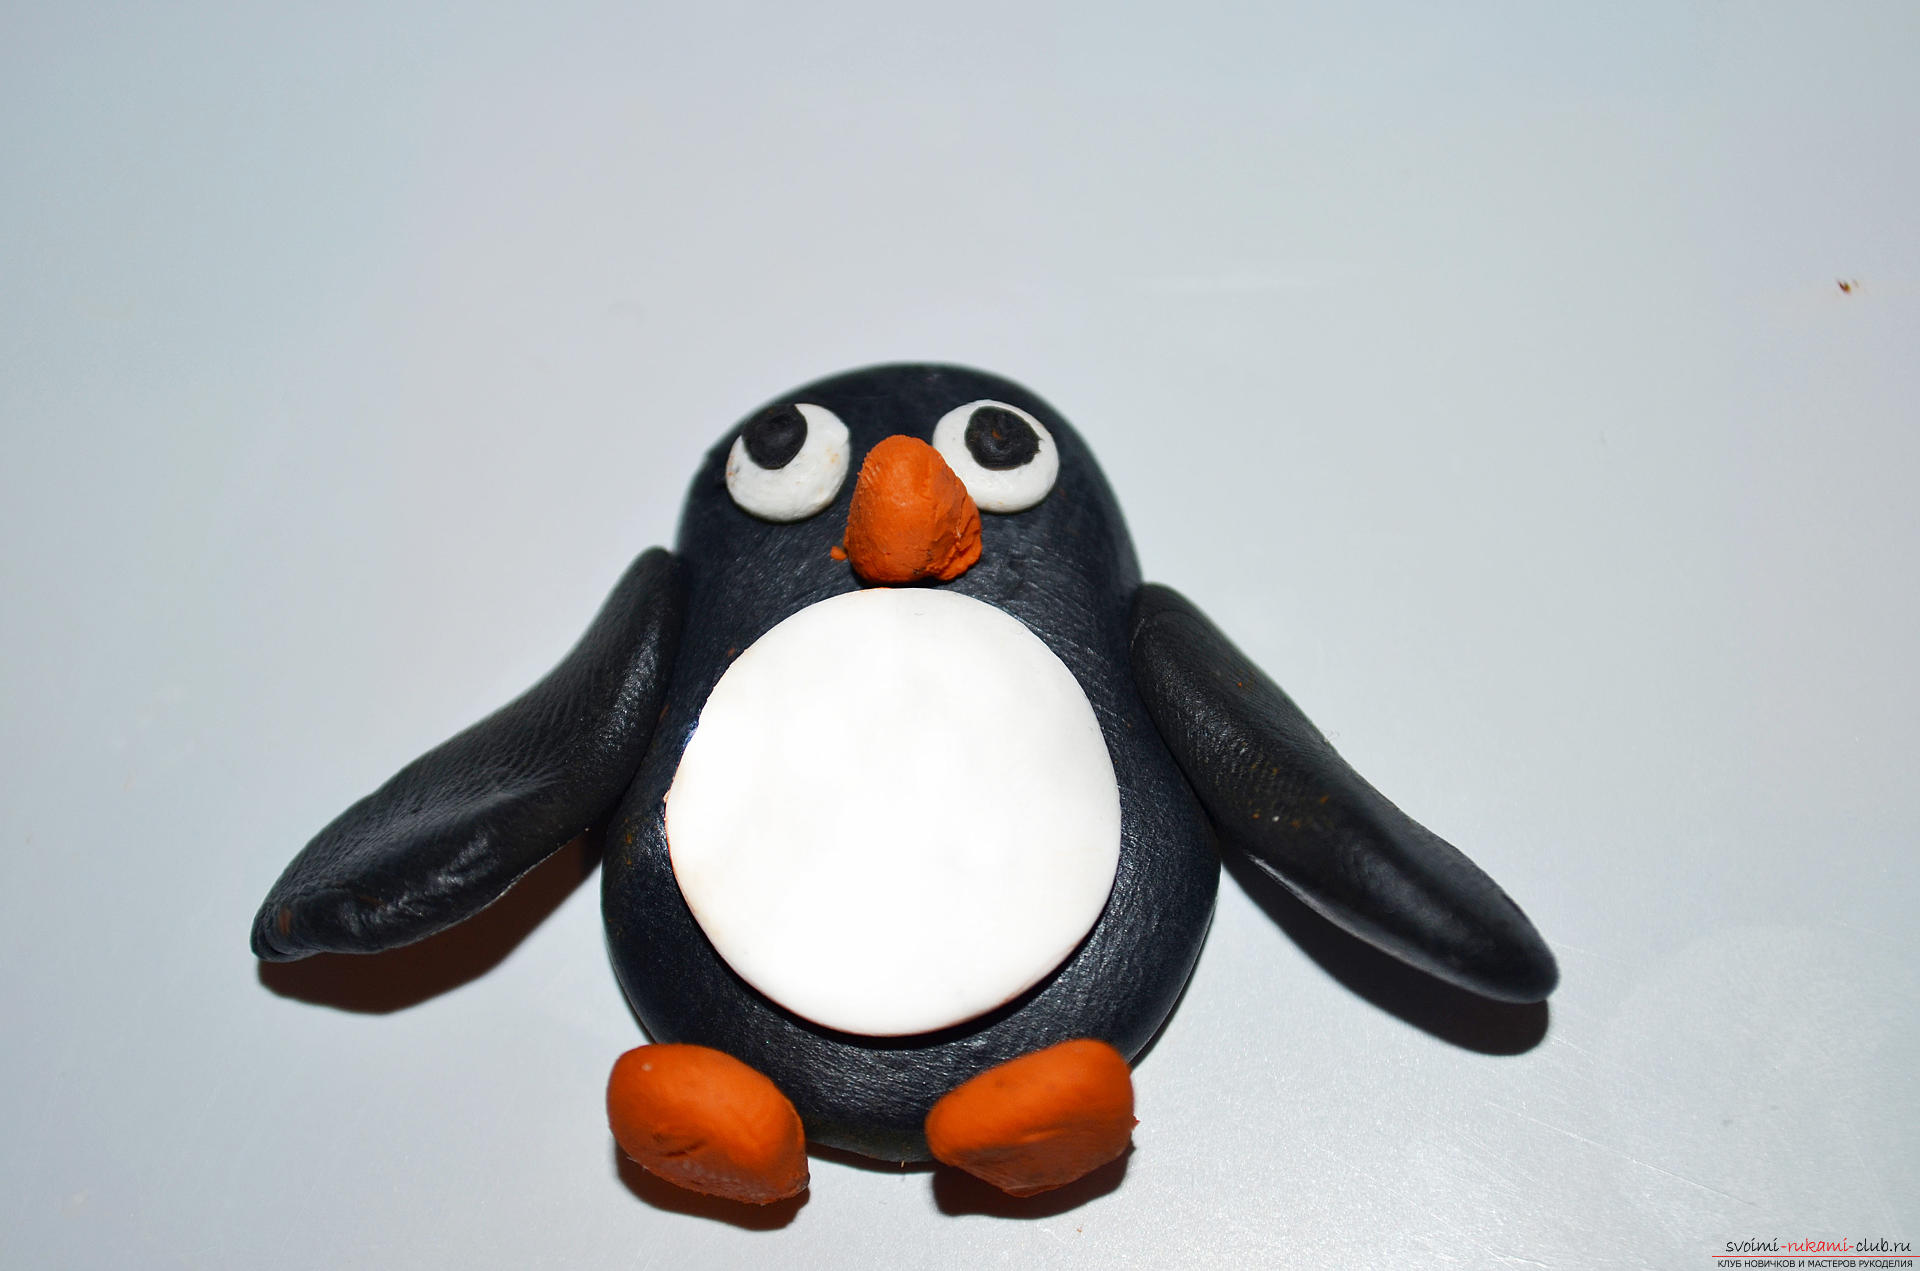 Фото к уроку лепки из полимерной глины пингвина. Фото №10